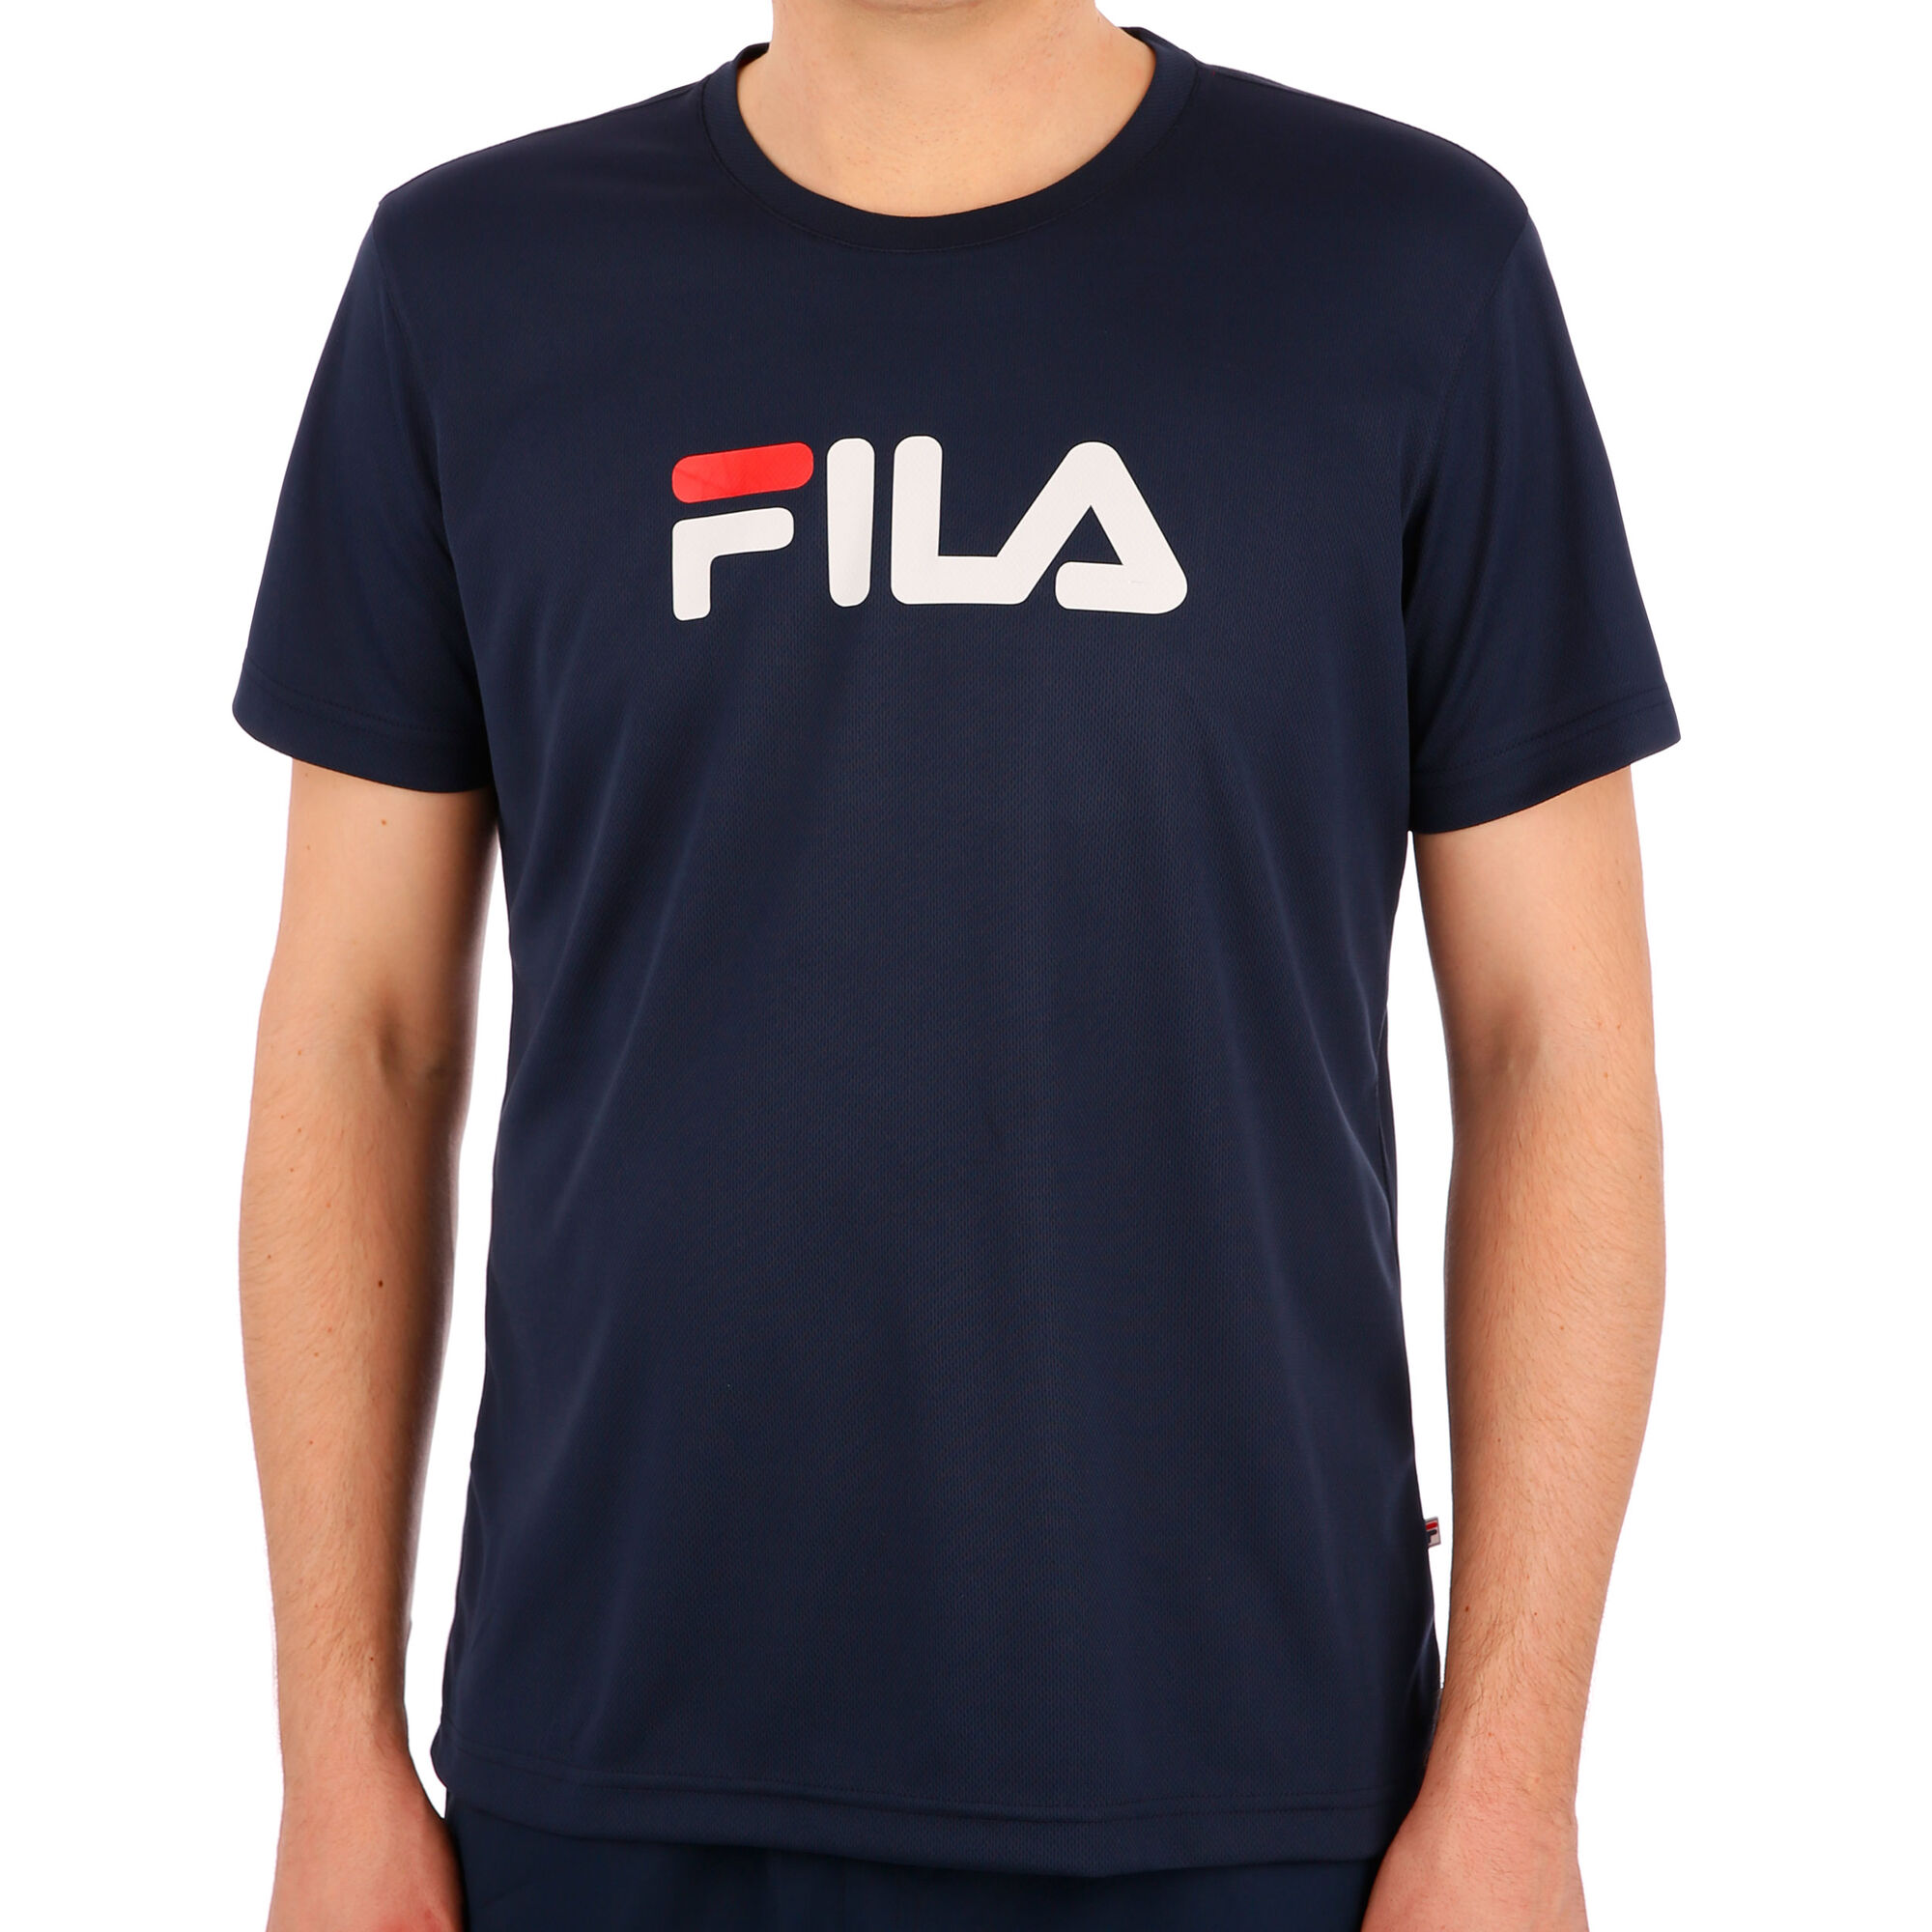 buy Fila Logo T-Shirt Men - Dark Blue, White online Tennis-Point